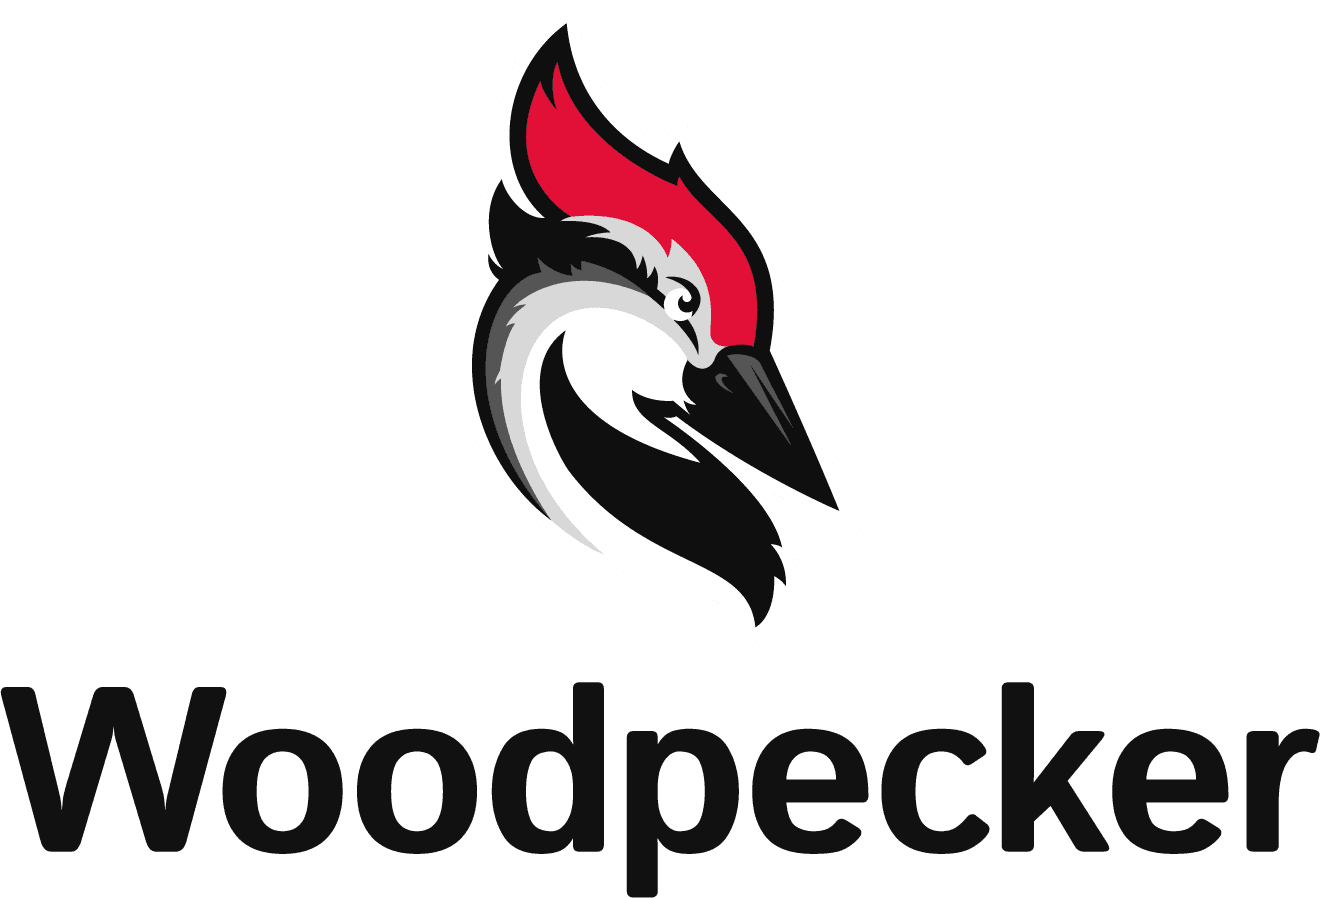 Woodpecker.co